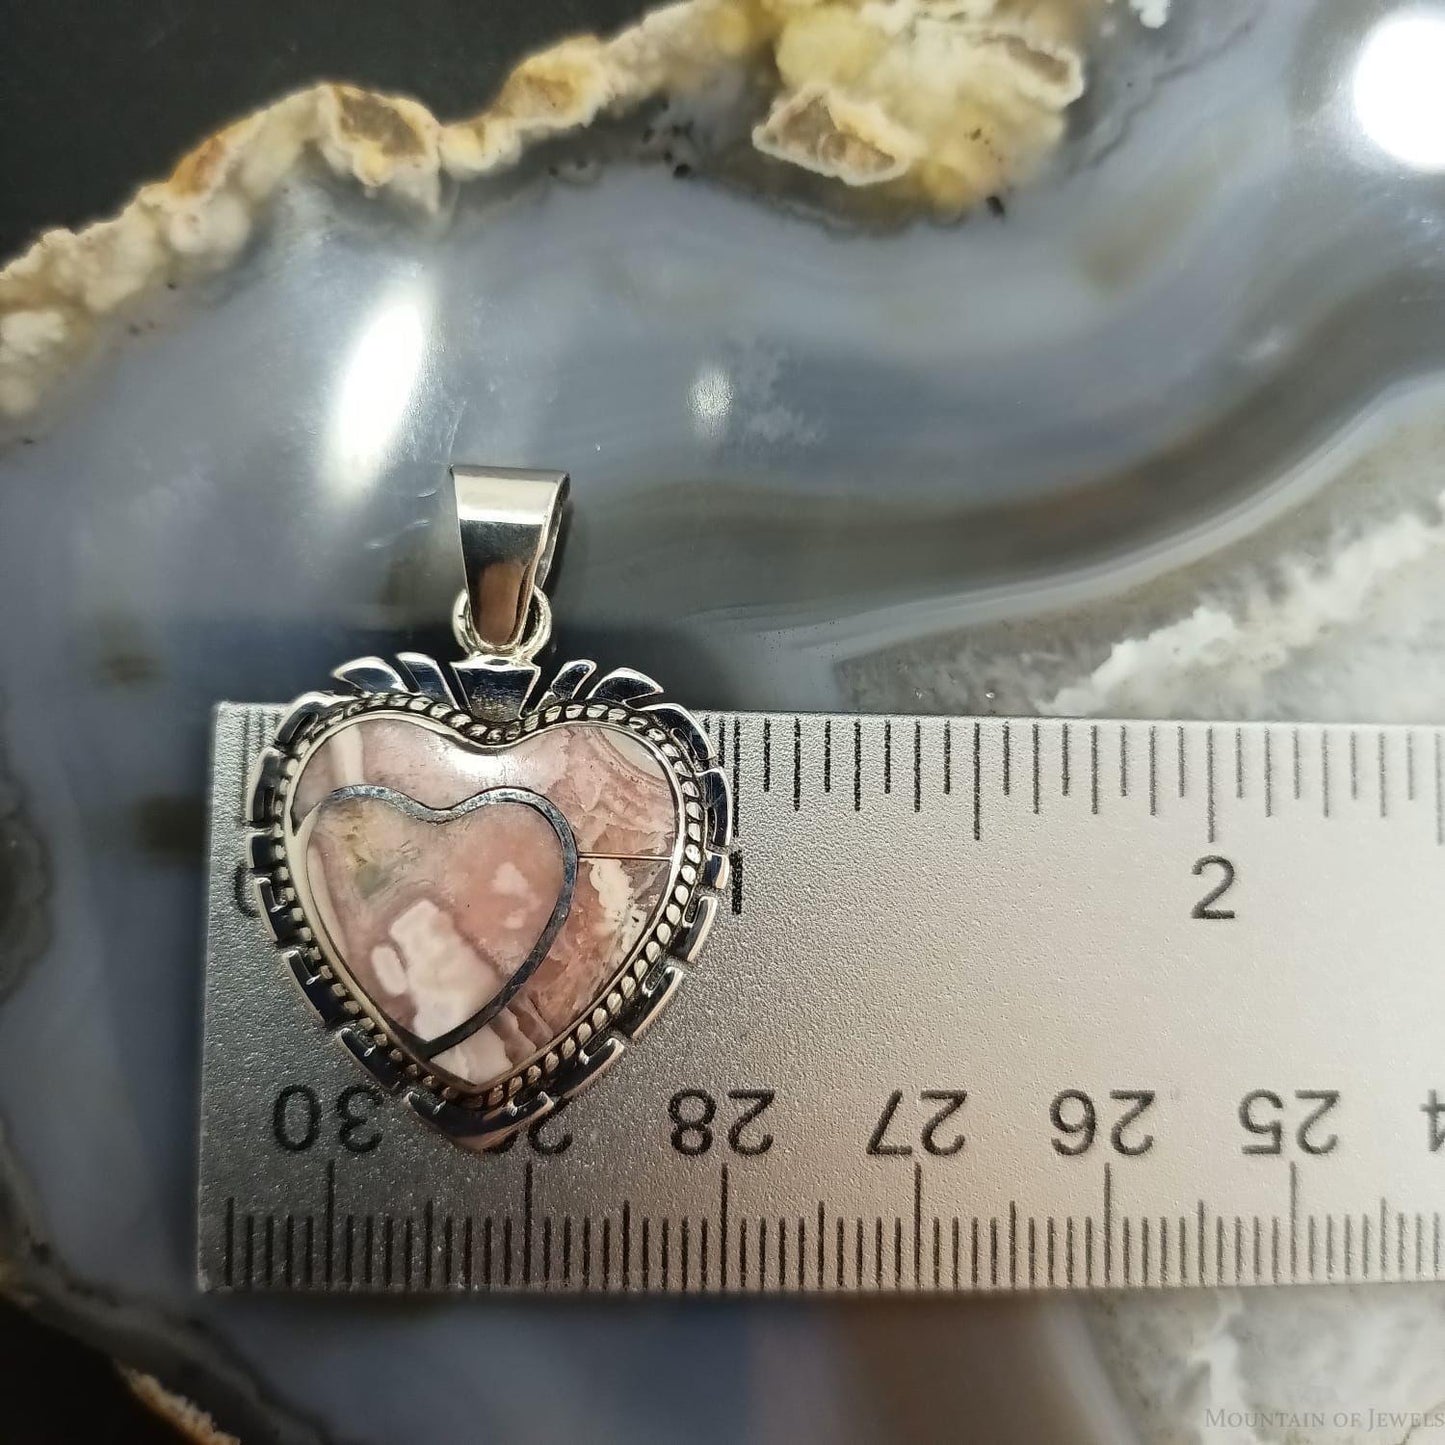 Native American Sterling Silver Rhodochrosite Double Heart Pendant For Women